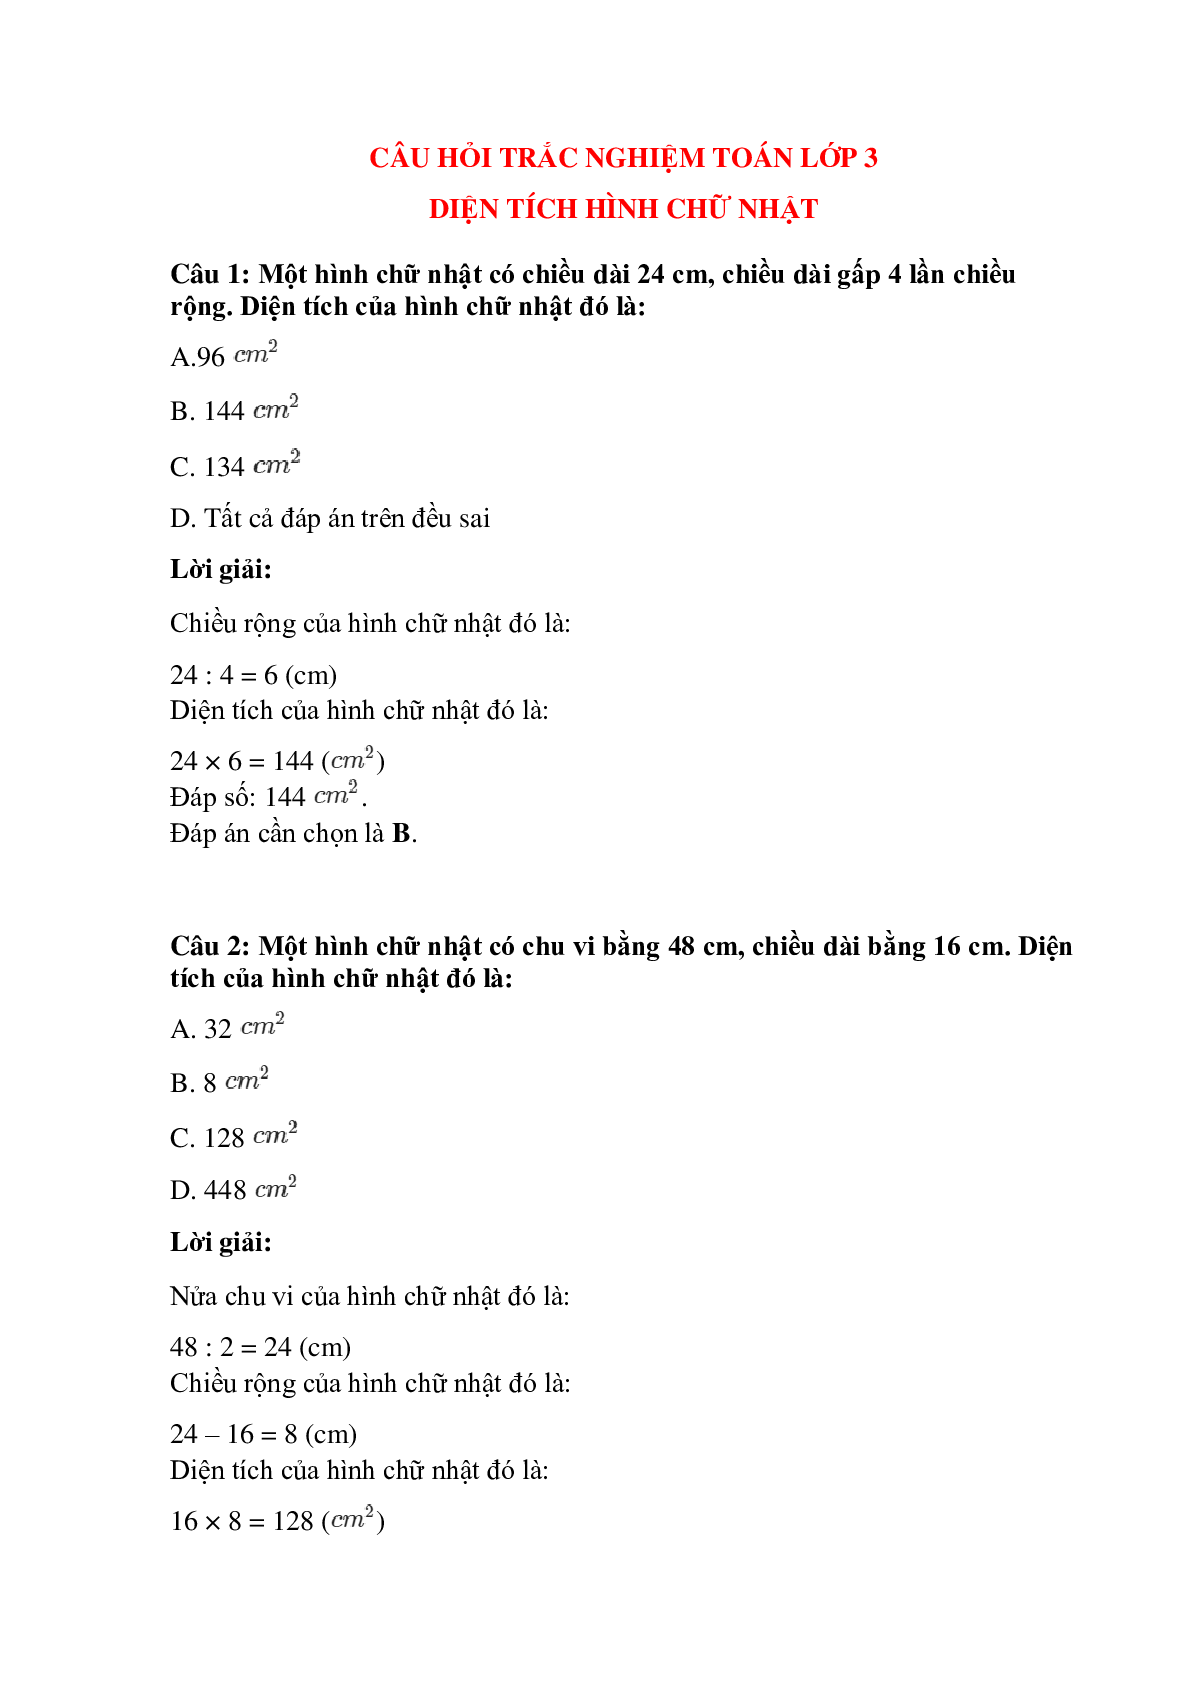 Trắc nghiệm Diện tích hình chữ nhật có đáp án – Toán lớp 3 (trang 1)